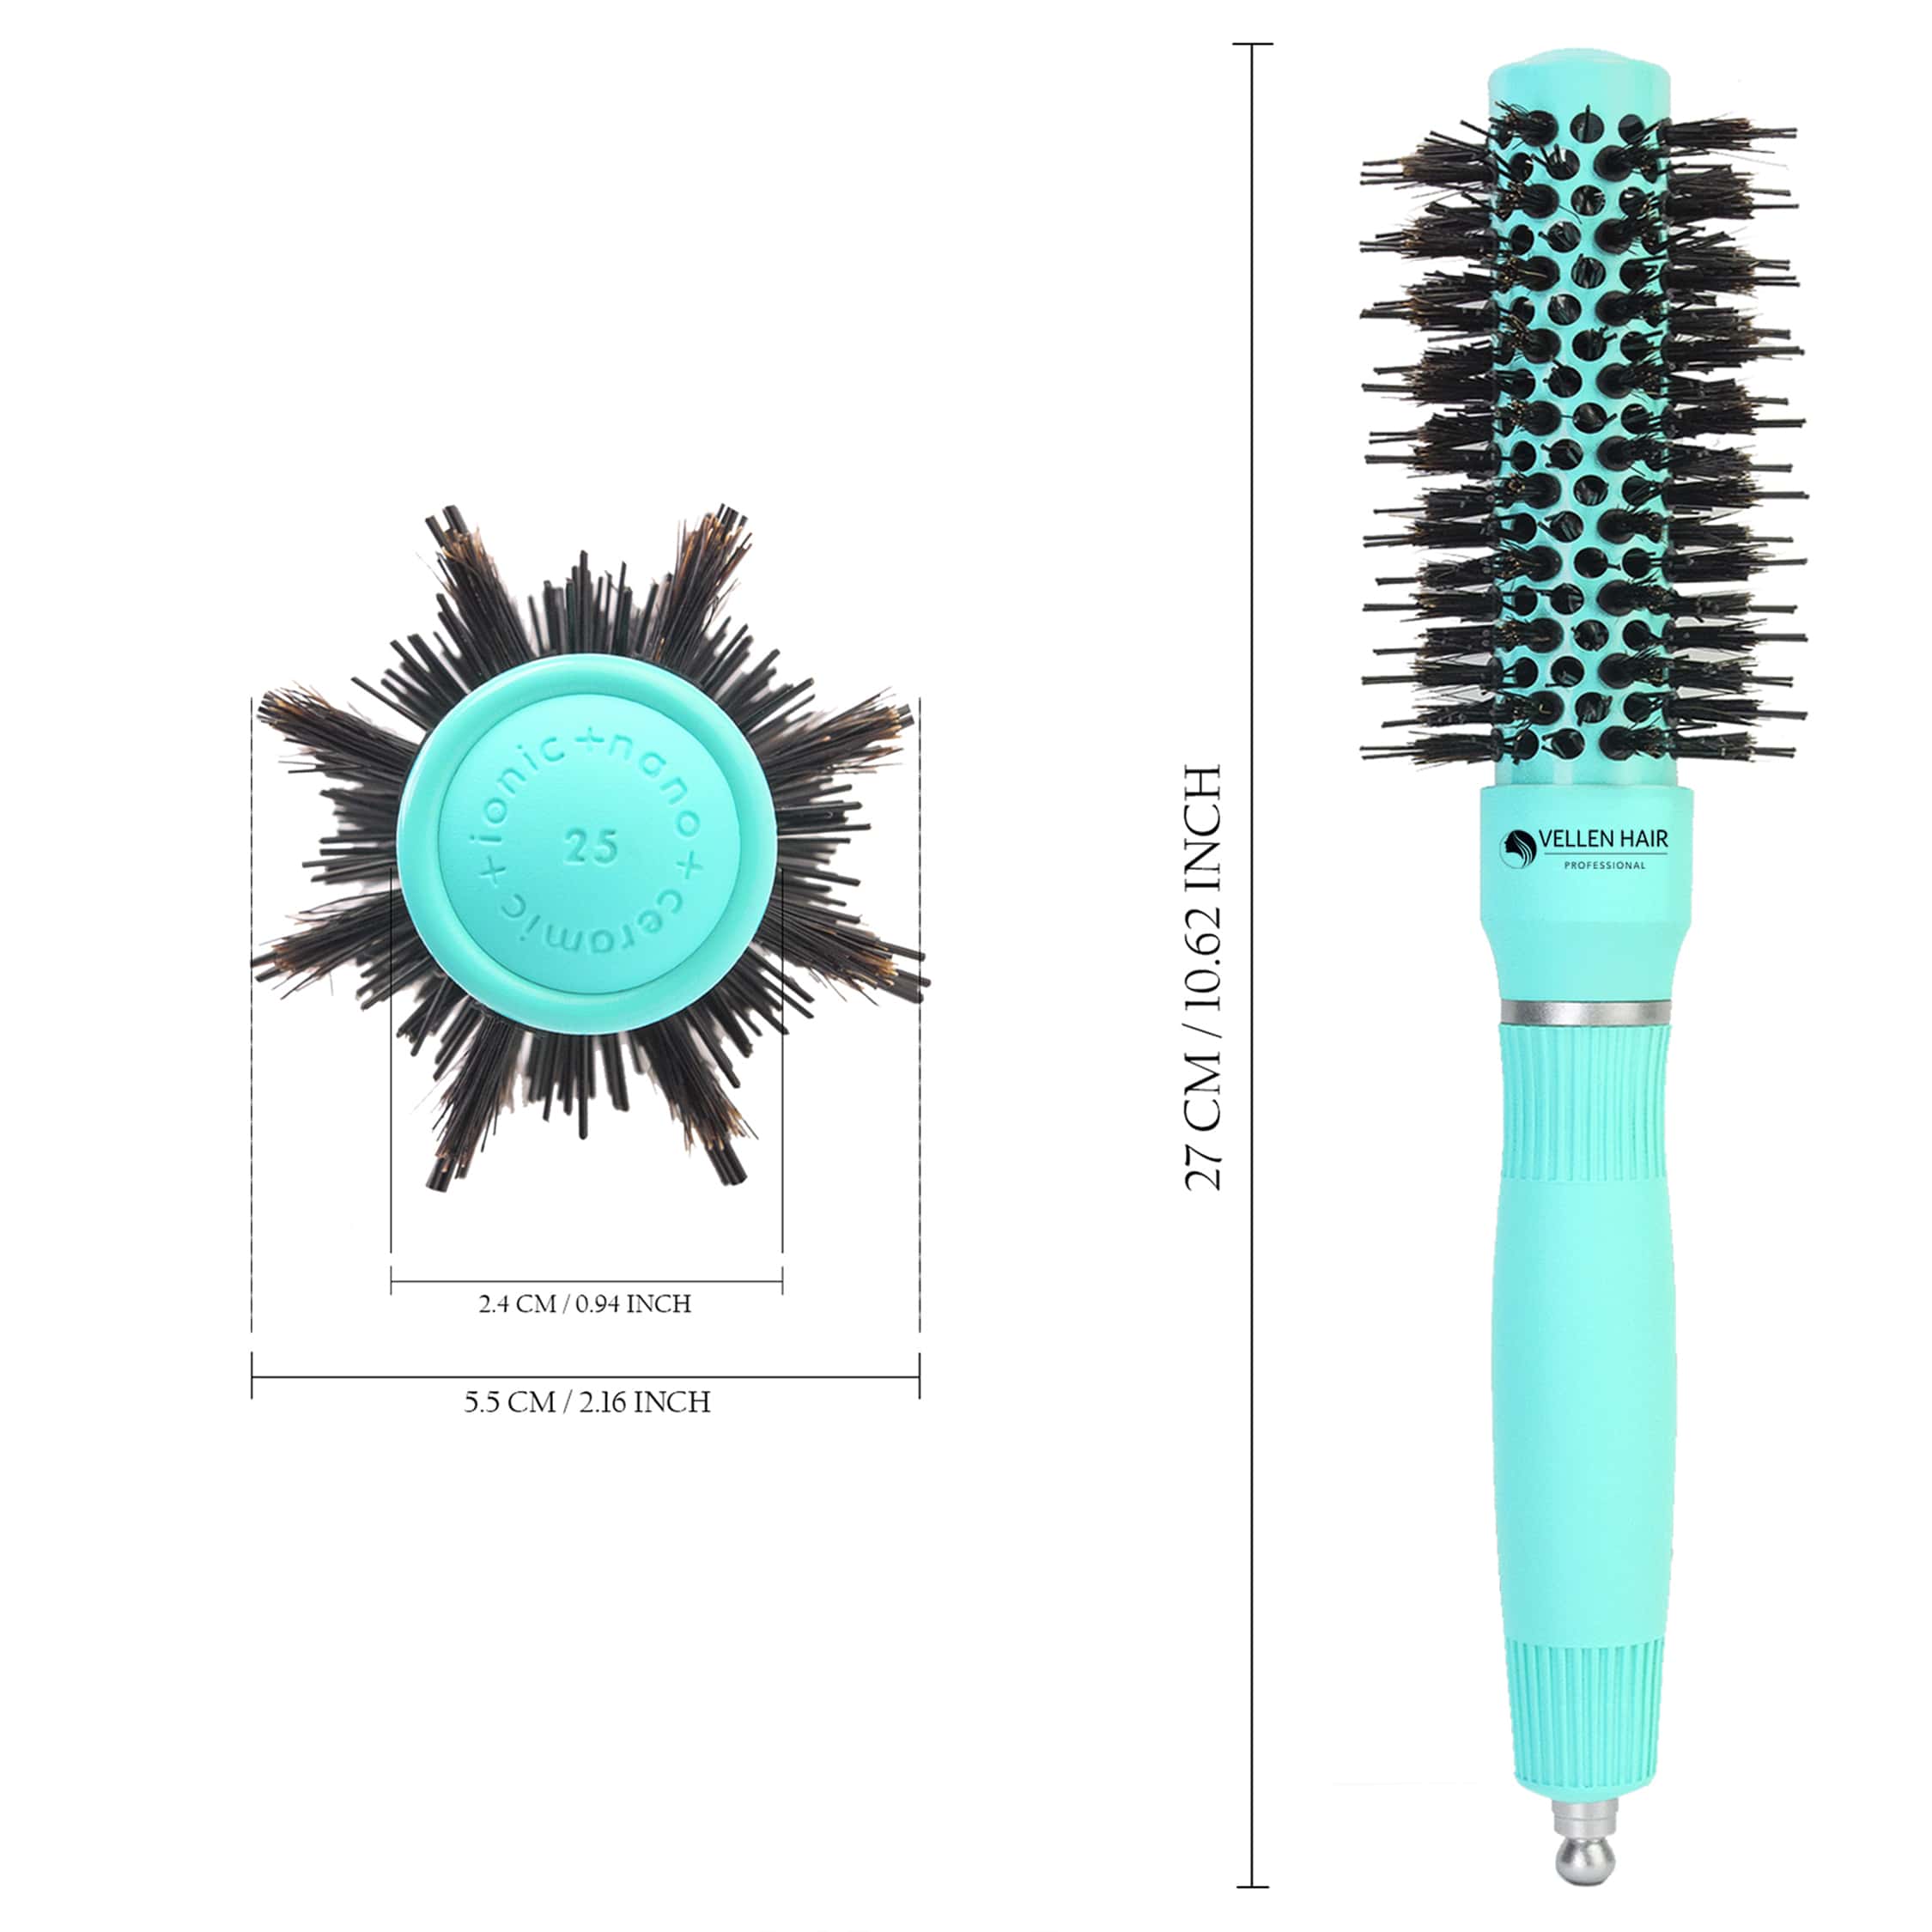 Ceramic/Ionic Round Hairbrush 1 inch / 25 mm - Mint